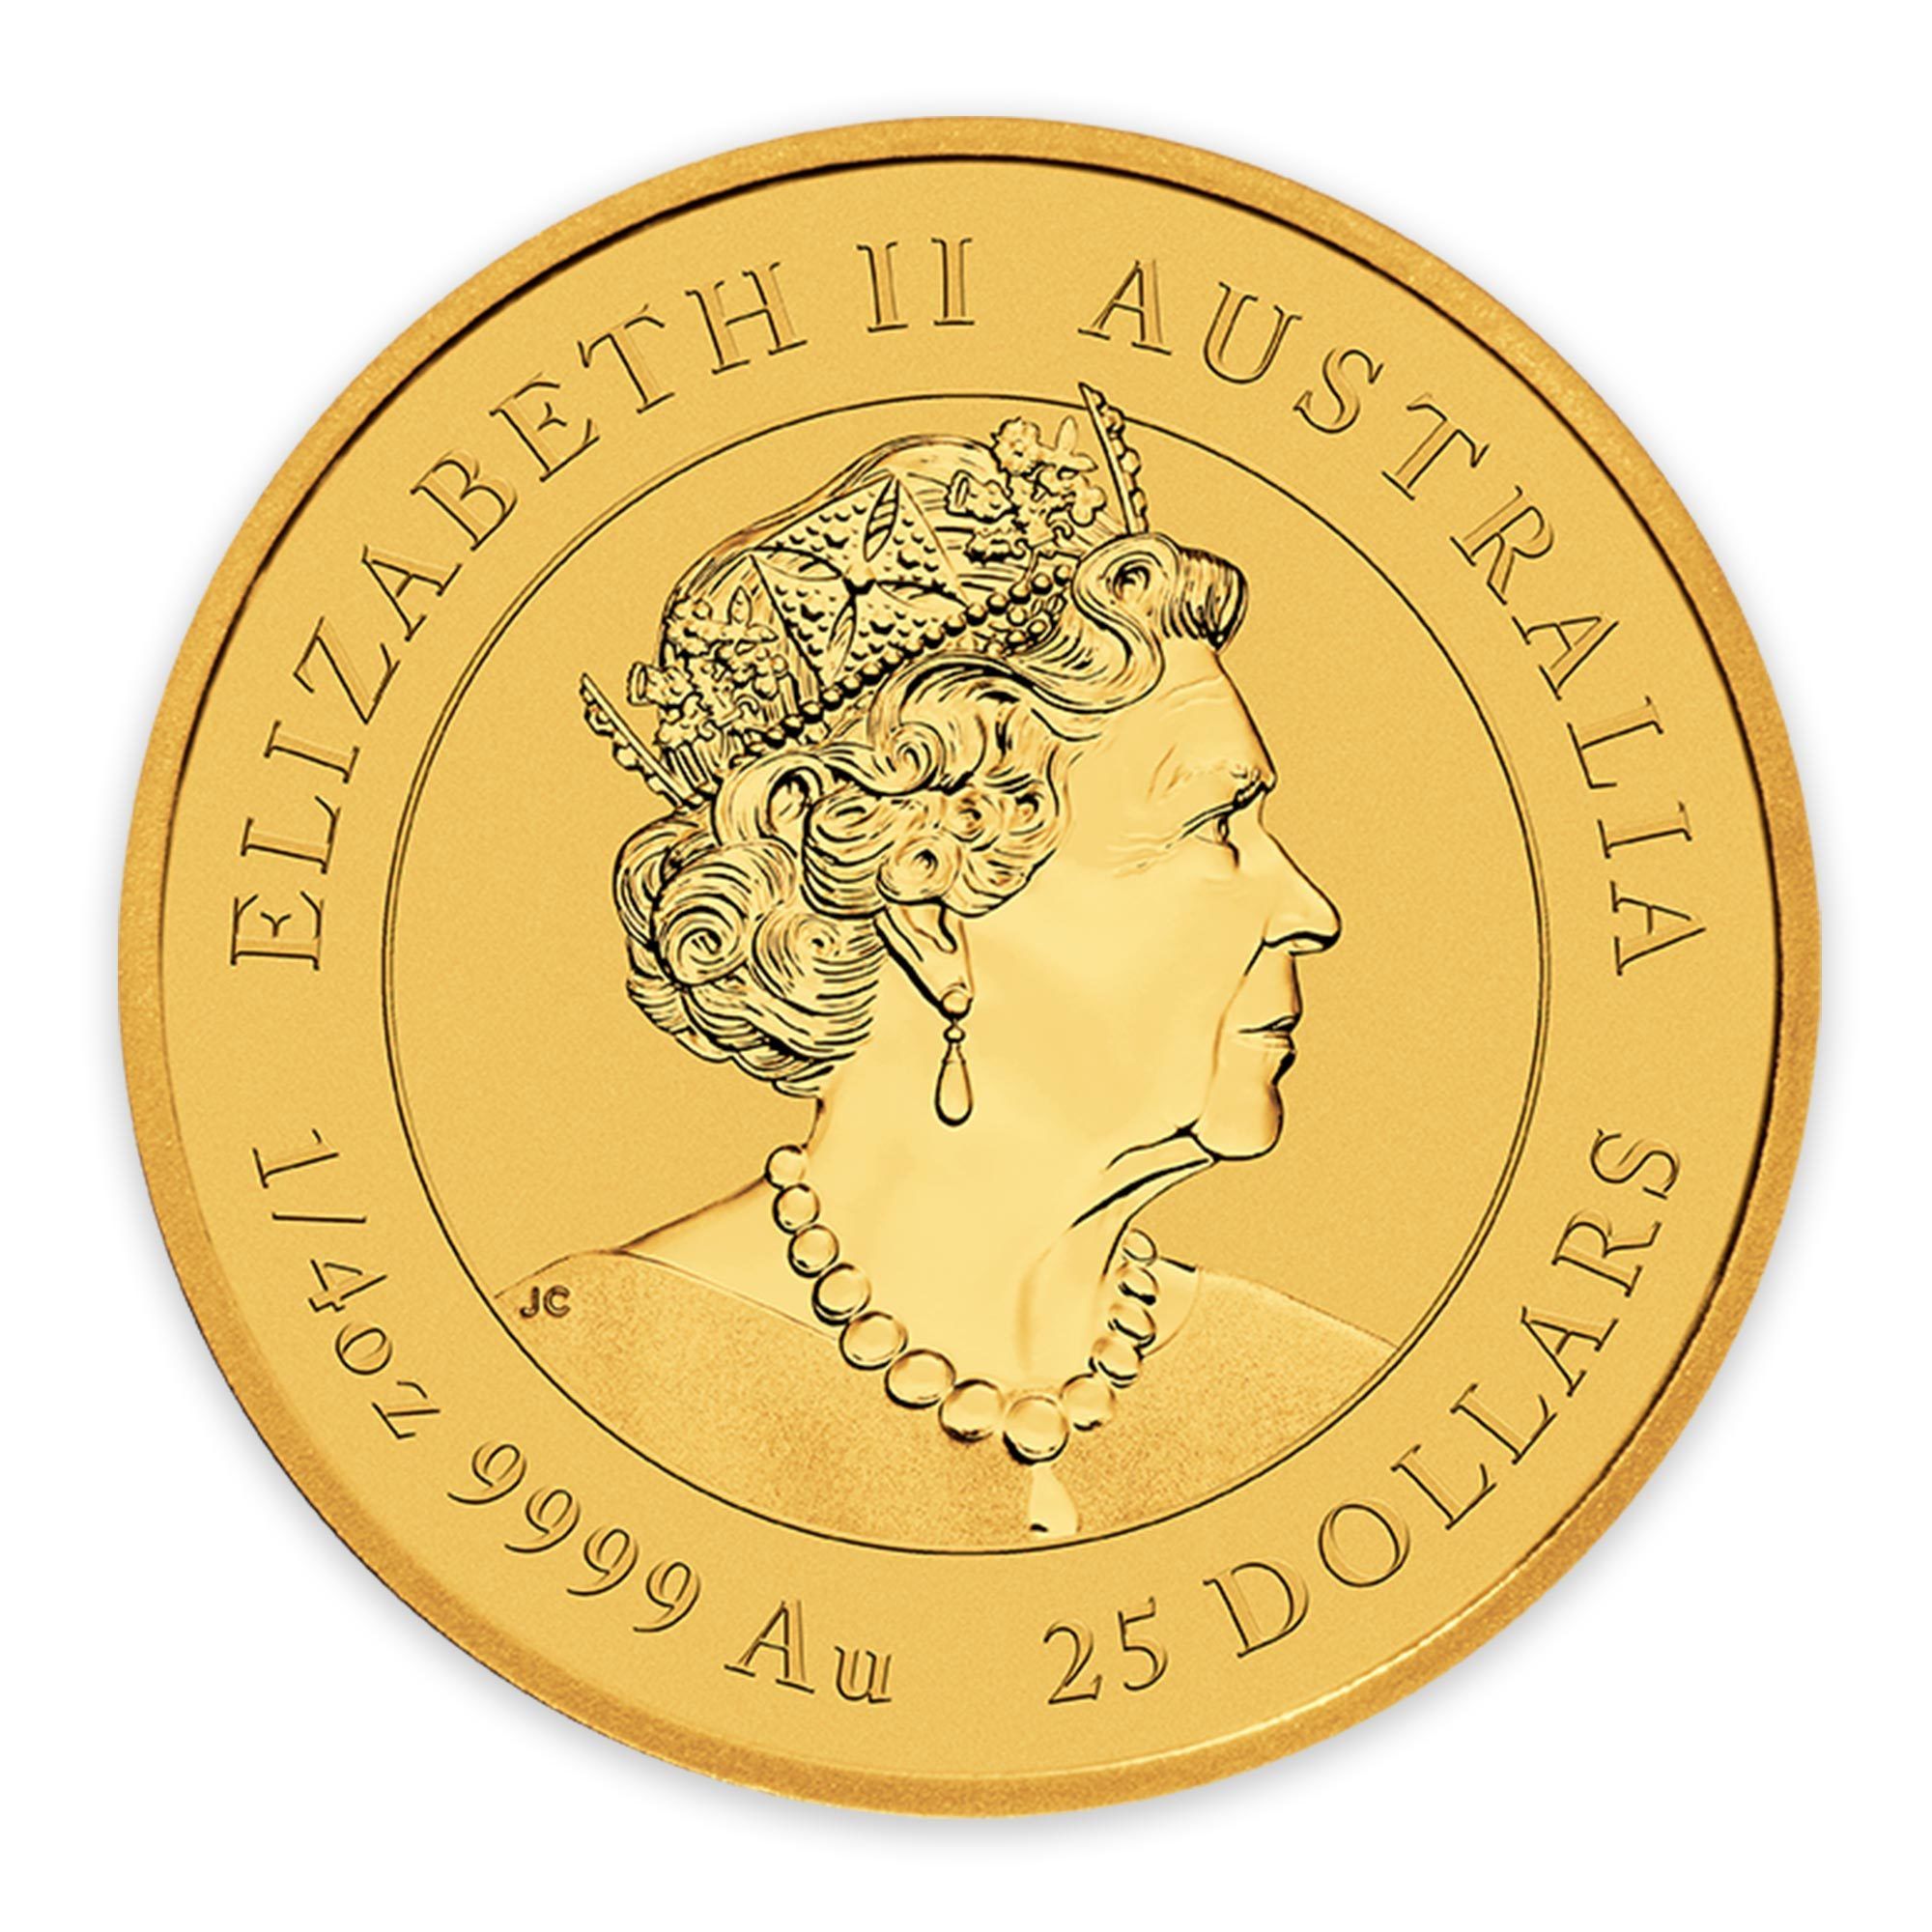 2023 1/4oz Perth Mint Gold Lunar Rabbit Coin Series 3